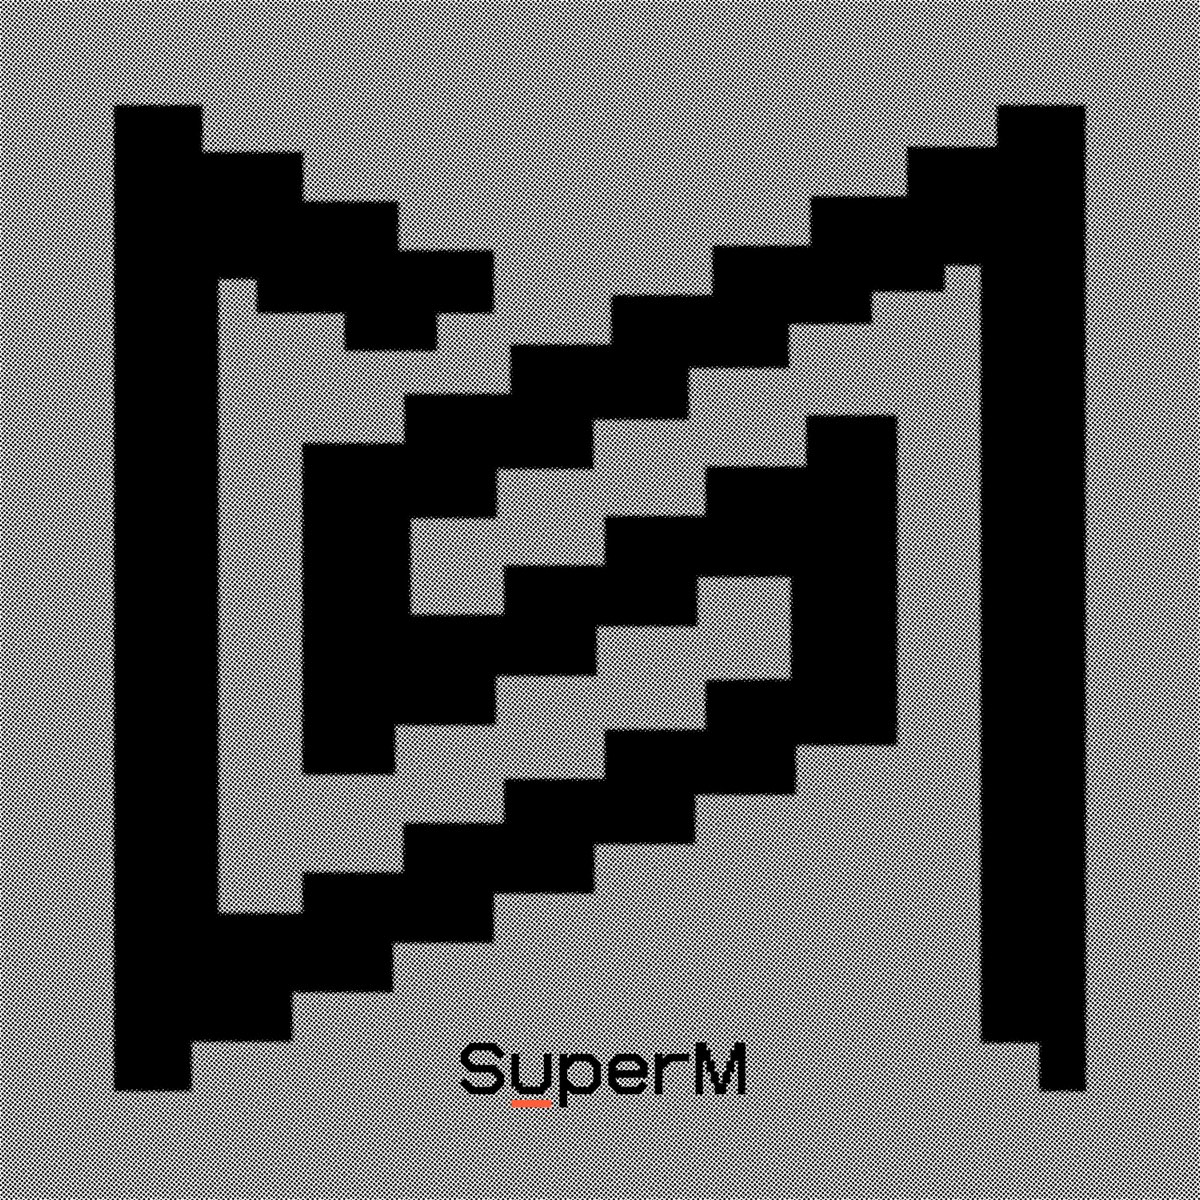 SuperM — So Long cover artwork